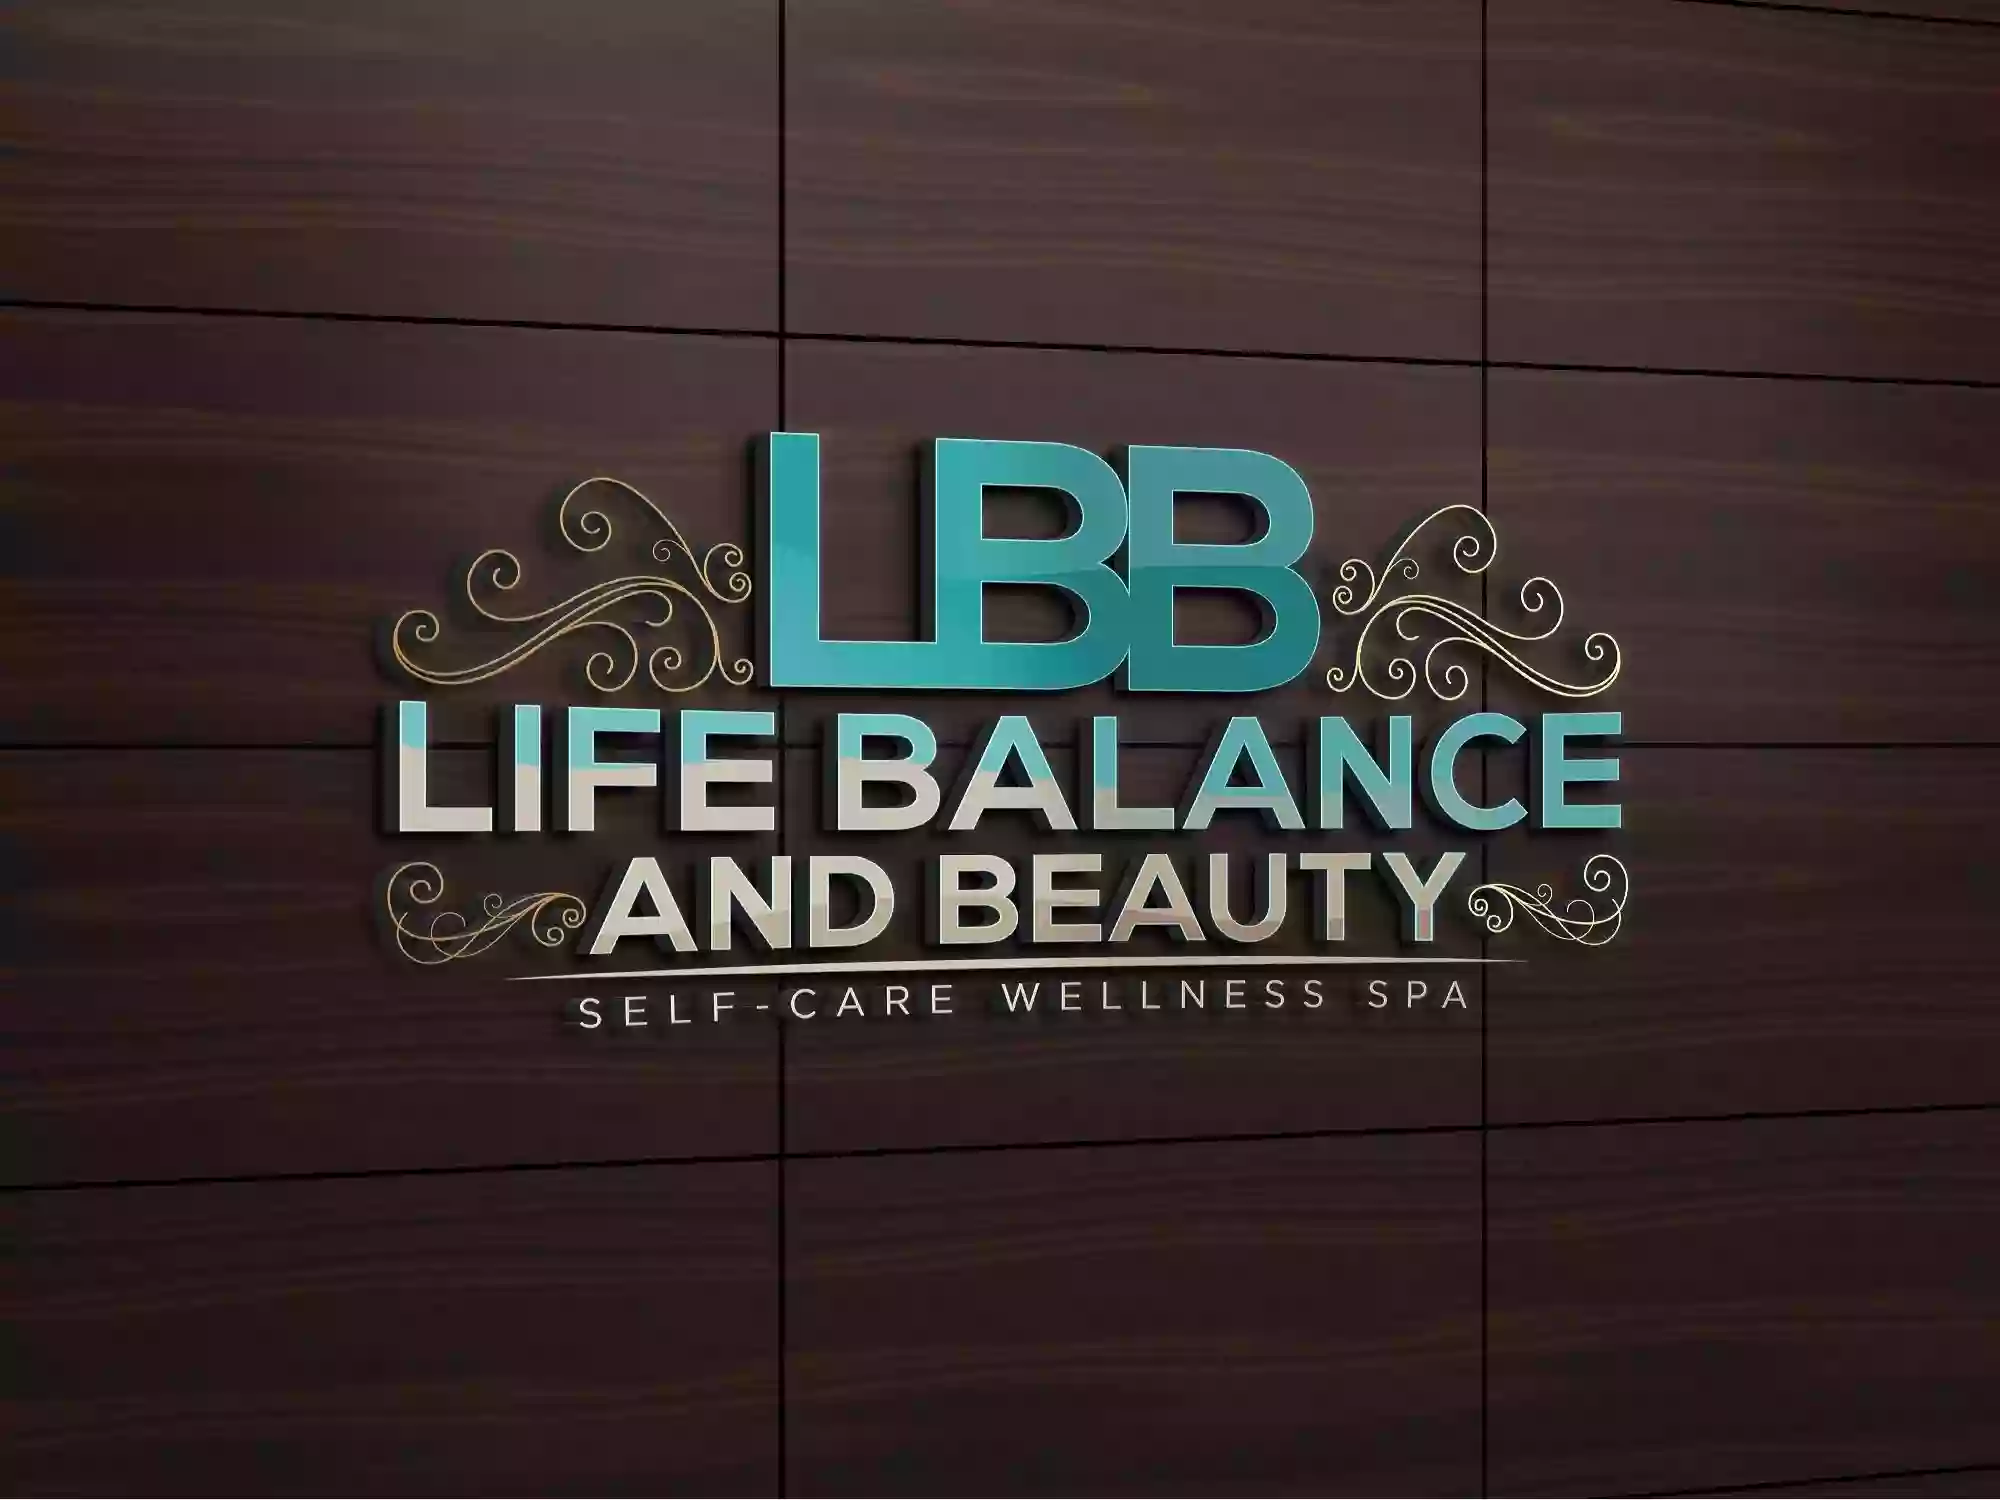 Salon DK at Life Balance and Beauty